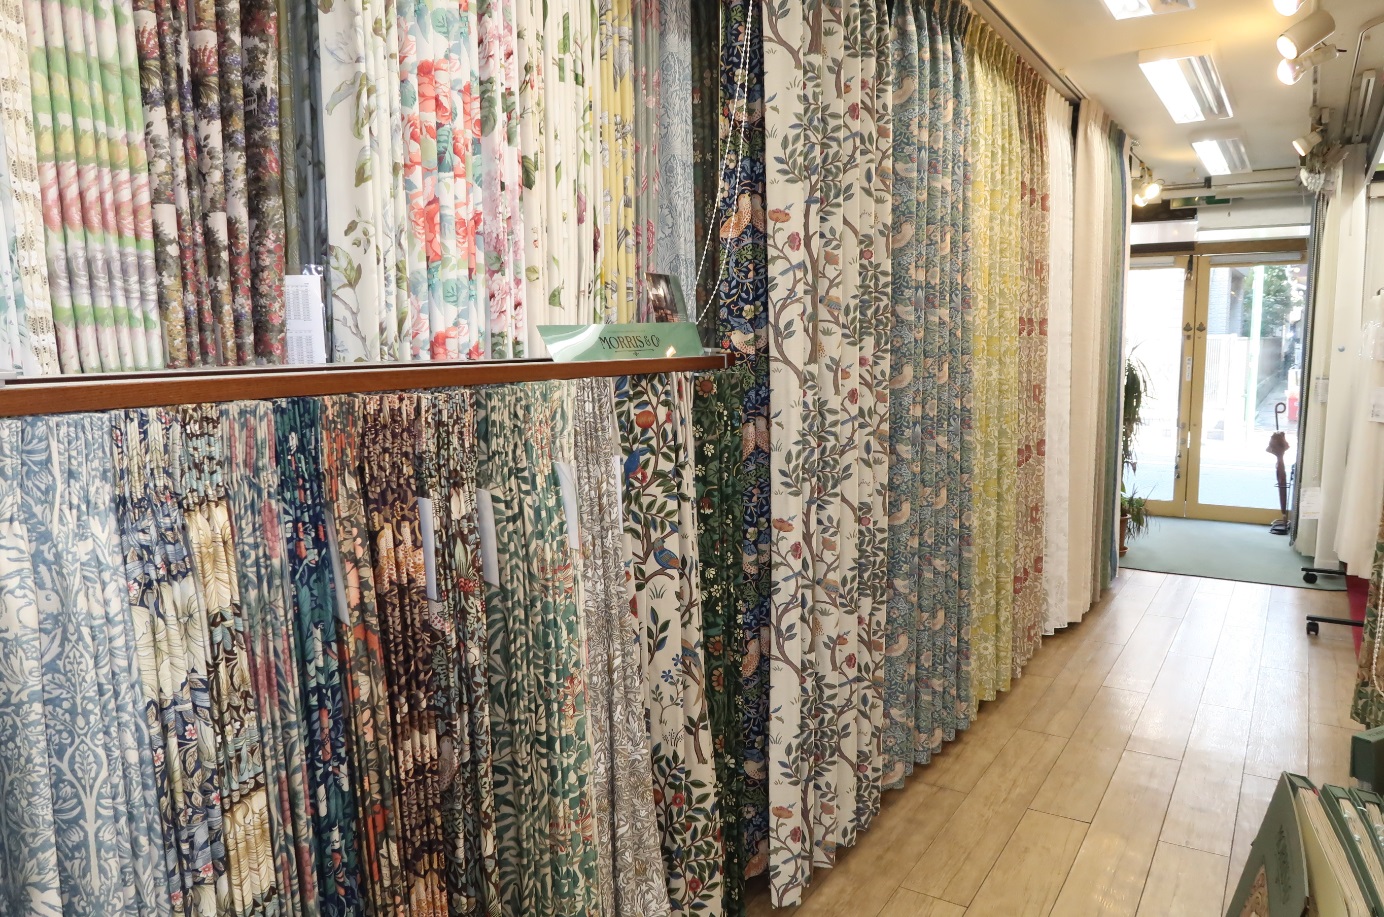 川島織物セルコンの『ケルムスコットツリー』、『いちご泥棒』。ウィリアム・モリスの新作展示品が入荷しました。